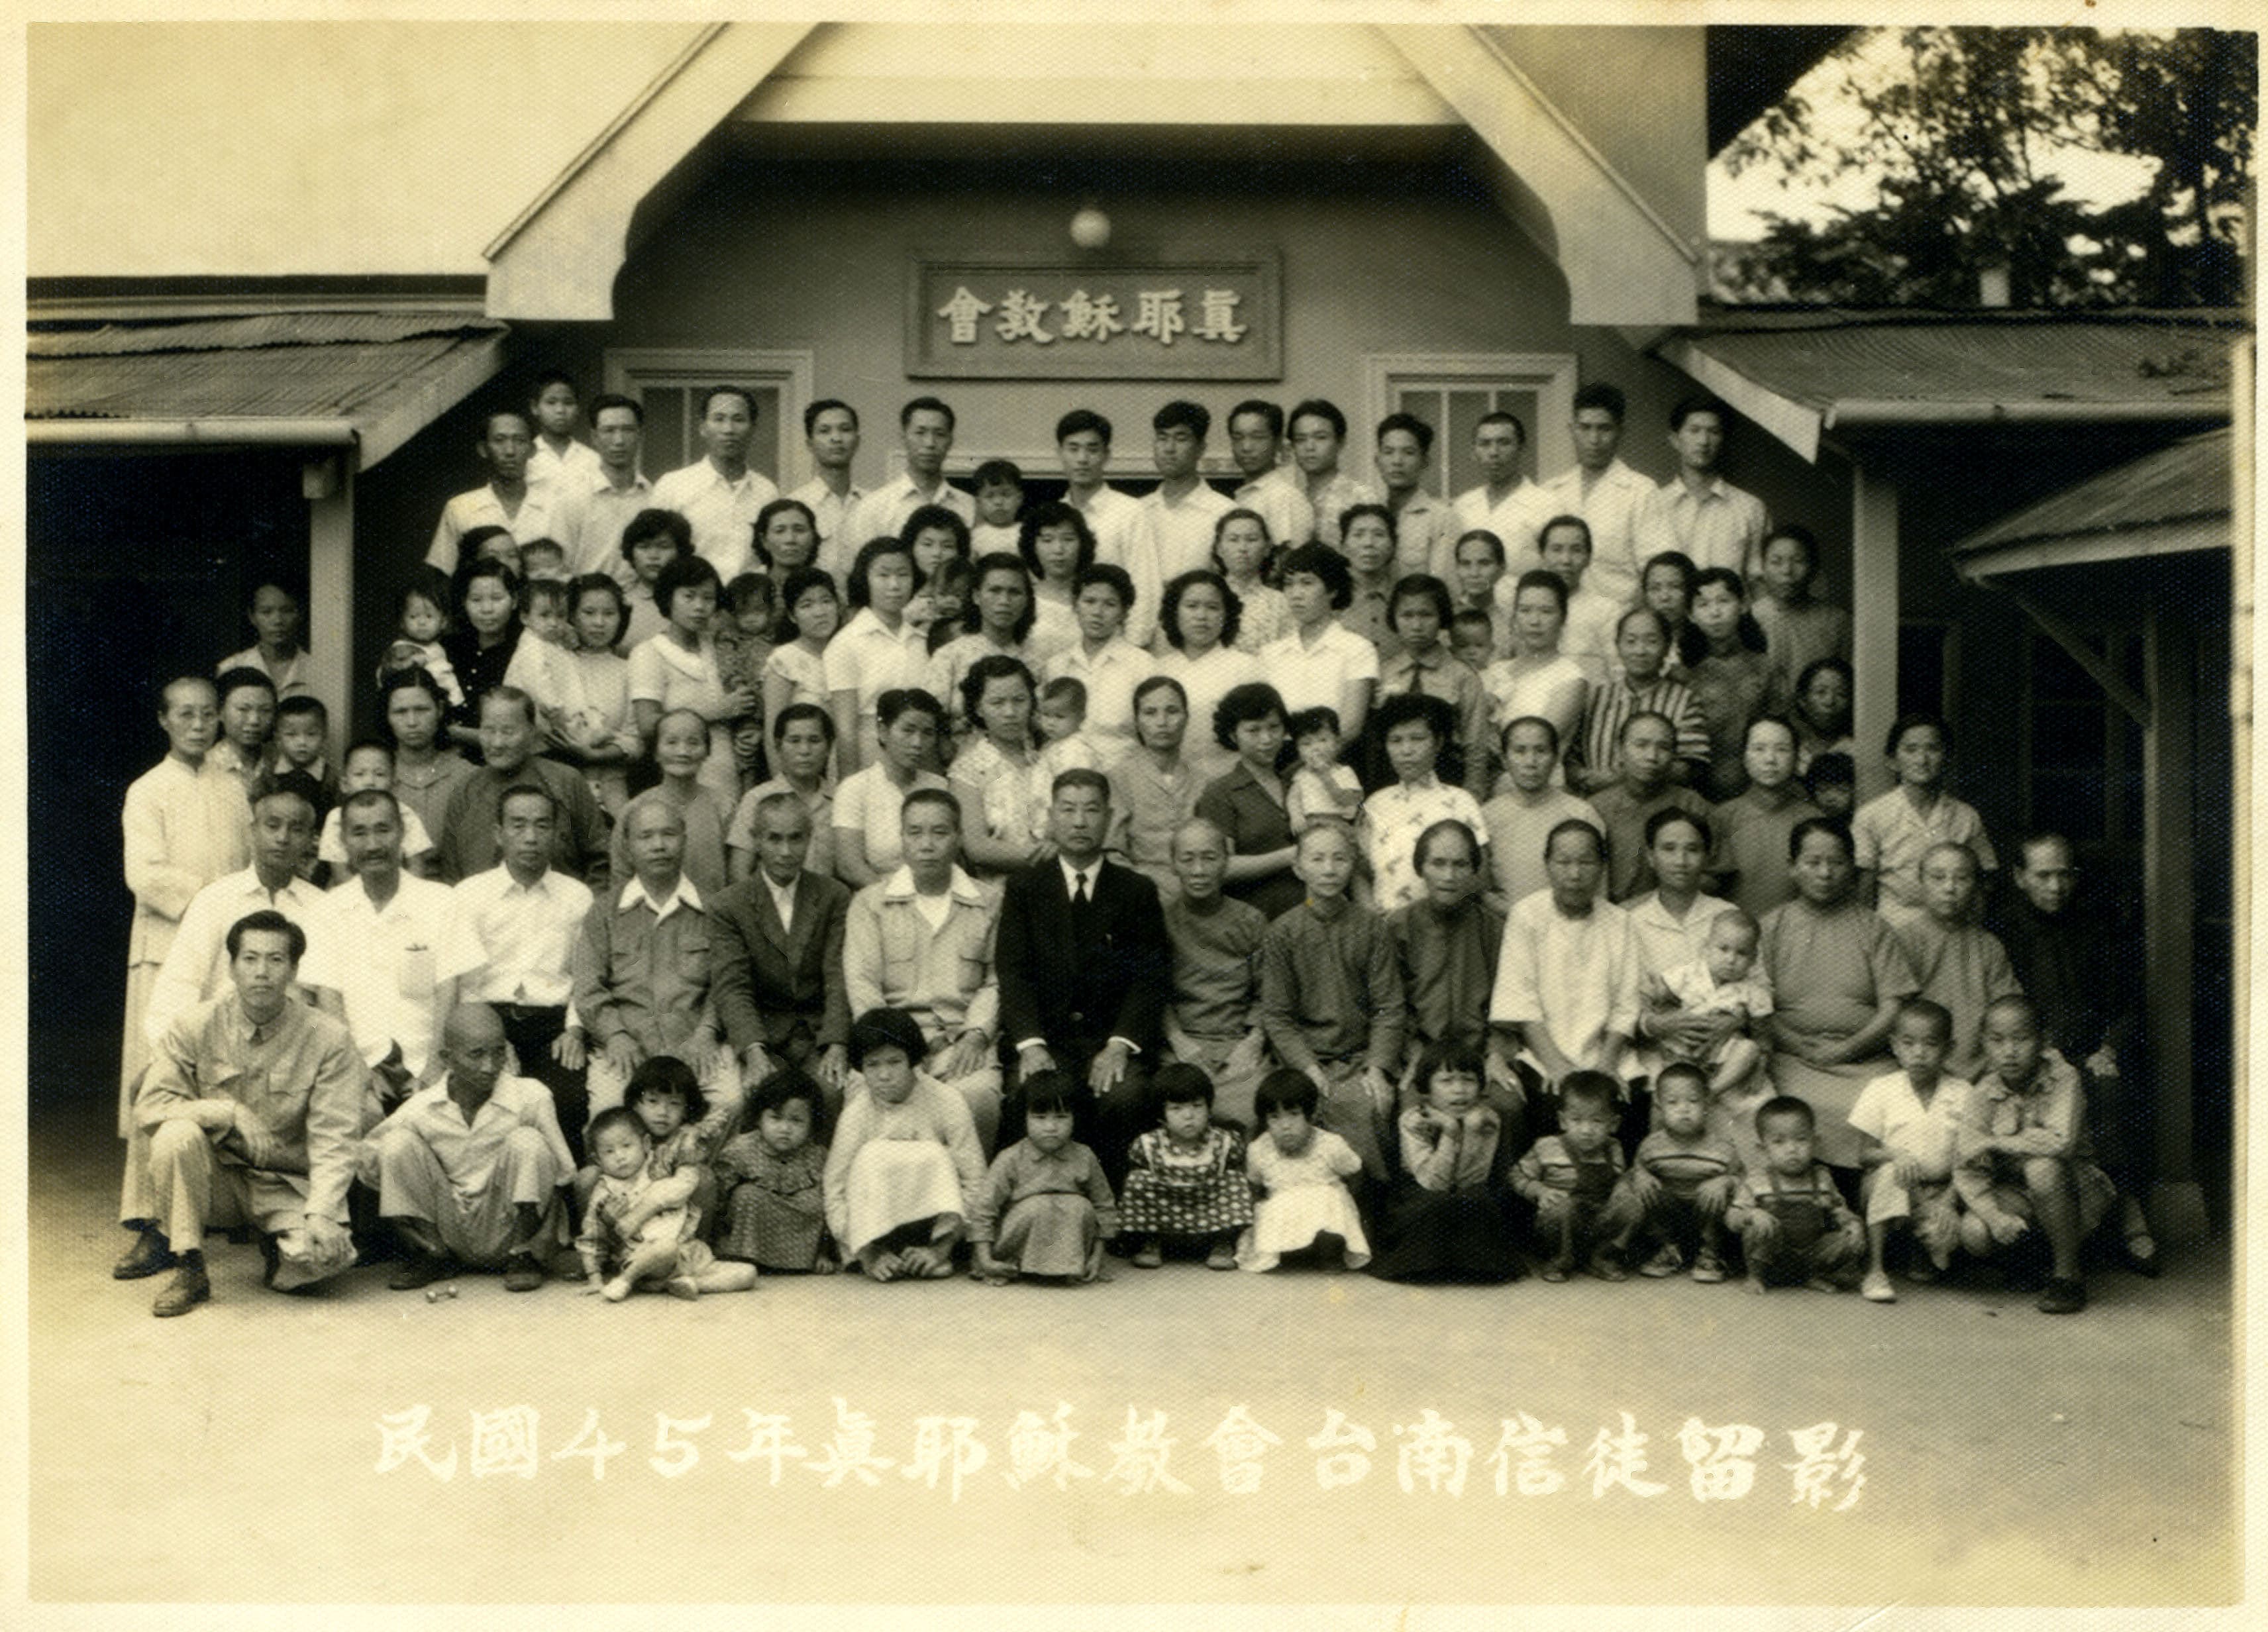 1956真耶穌教會台南信徒留影